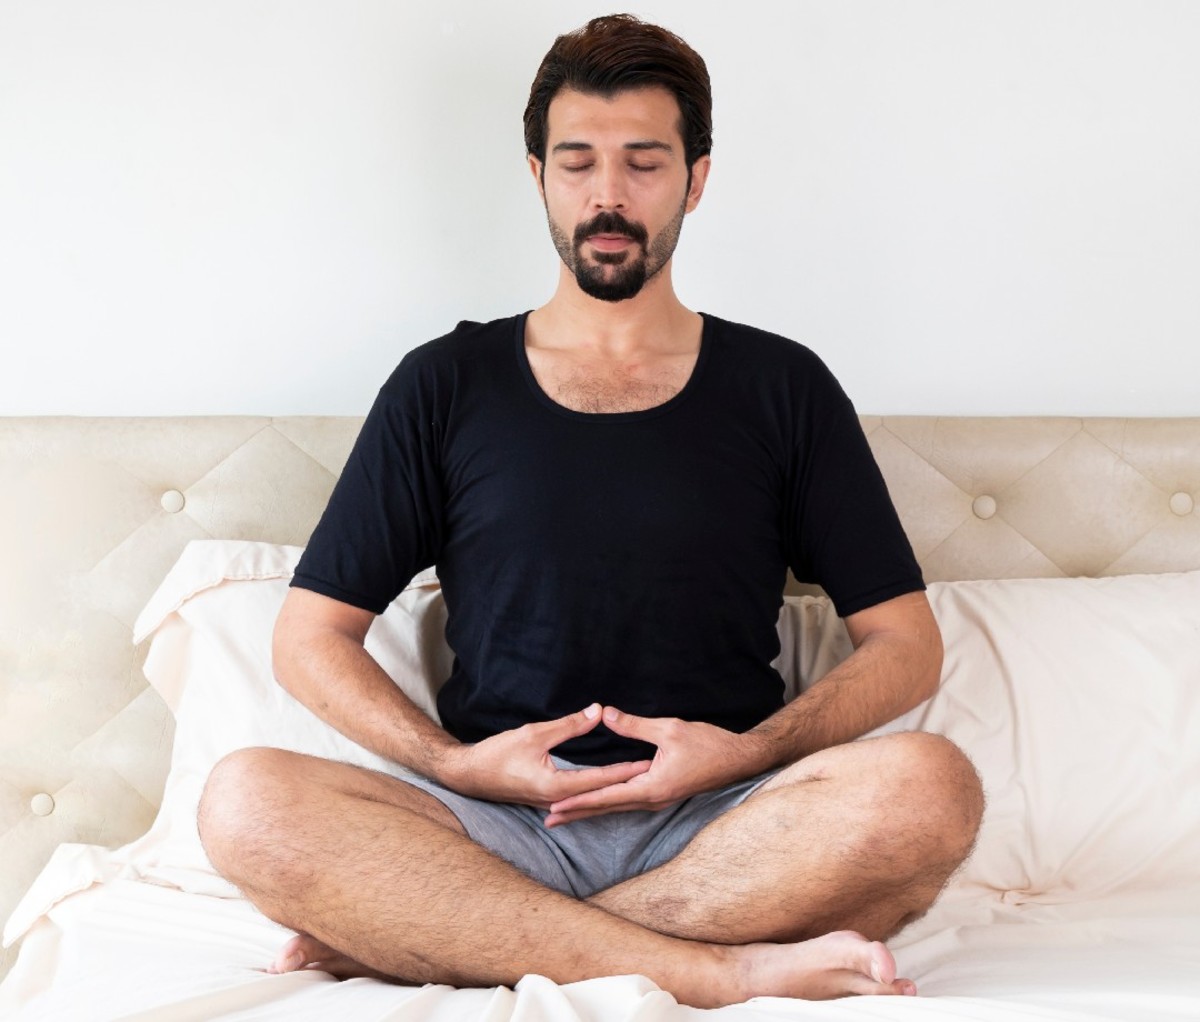 Man sitting cross-legged on the bed doing breathing exercises